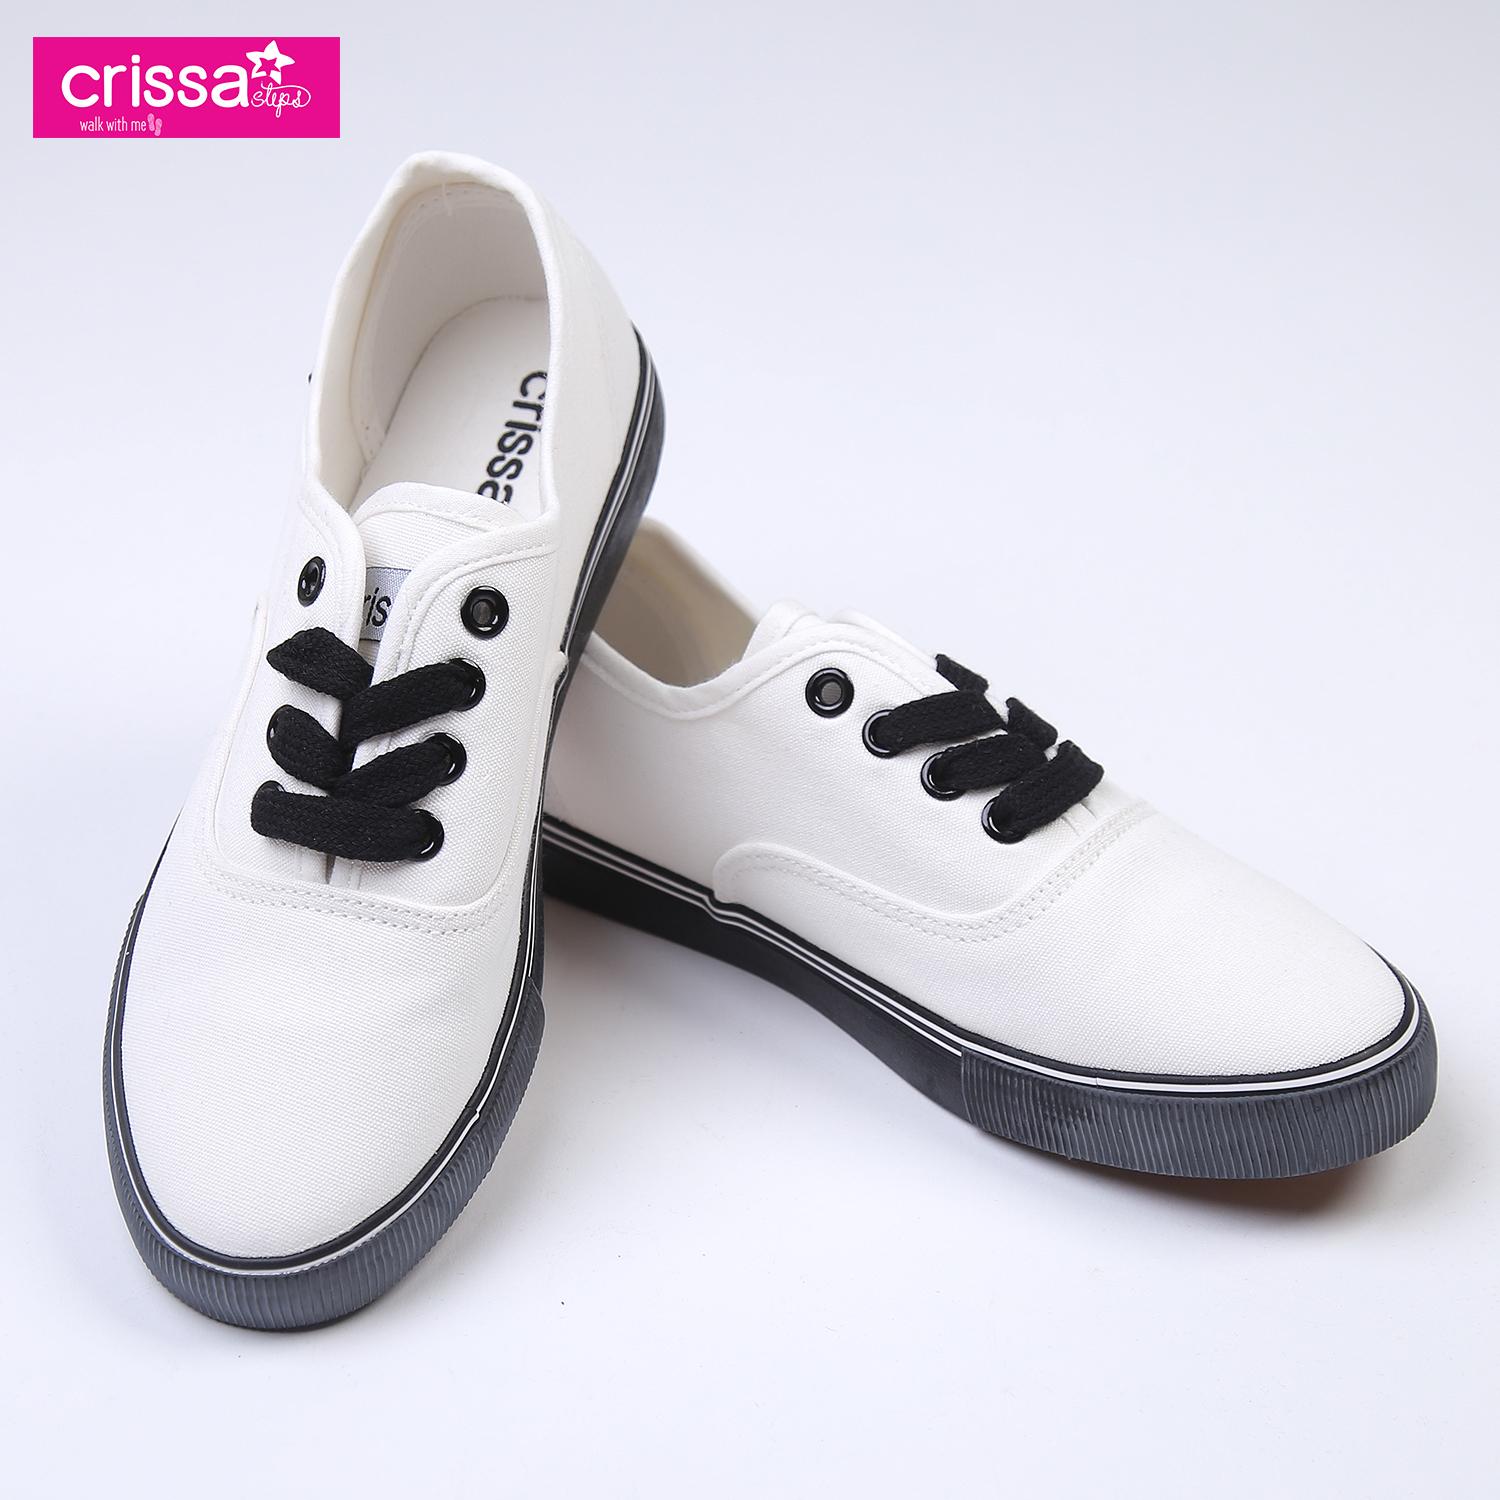 crissa white shoes